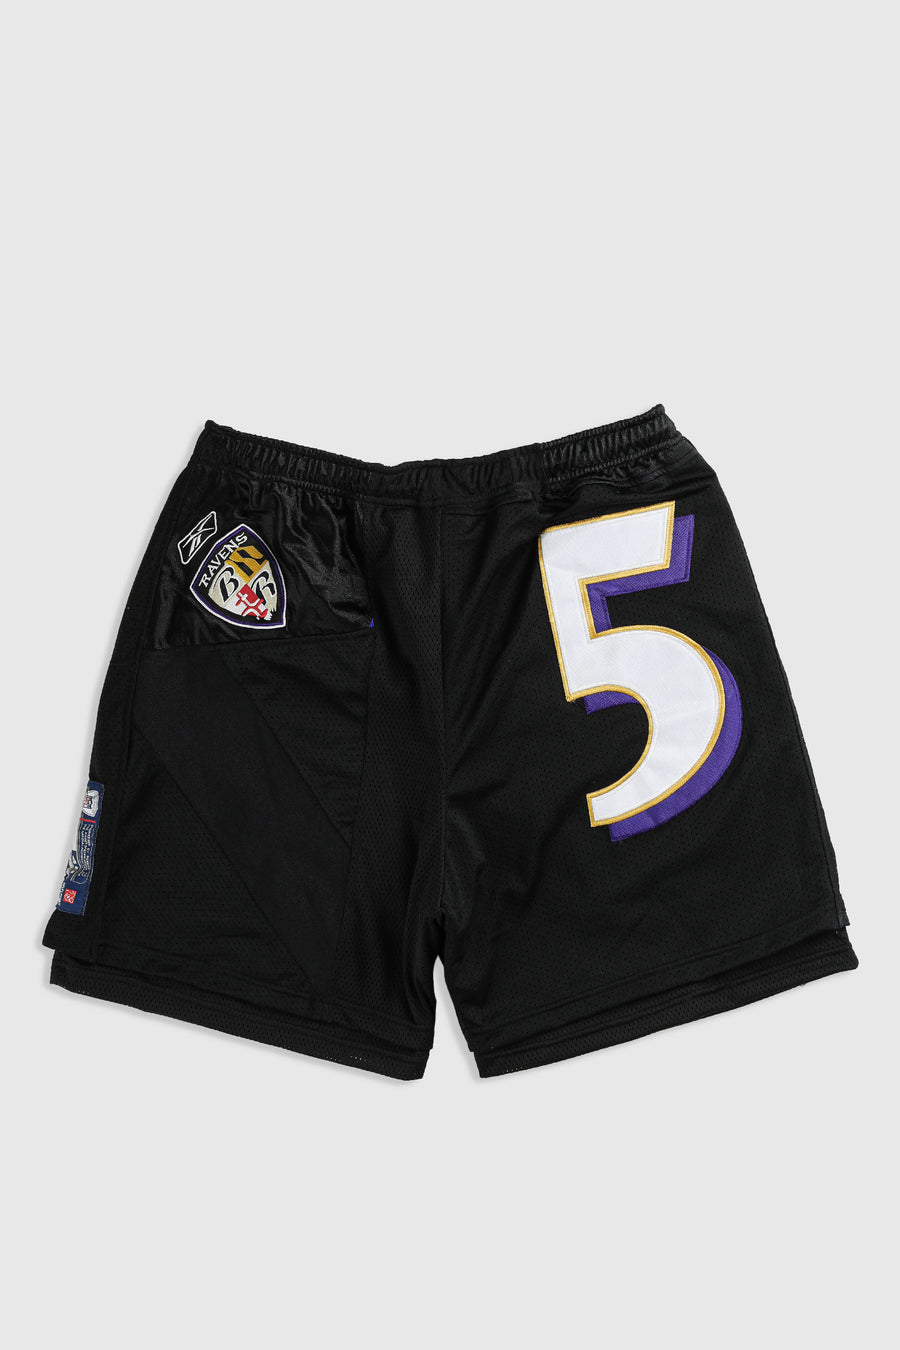 Unisex Rework Ravens NFL Jersey Shorts - 2XL